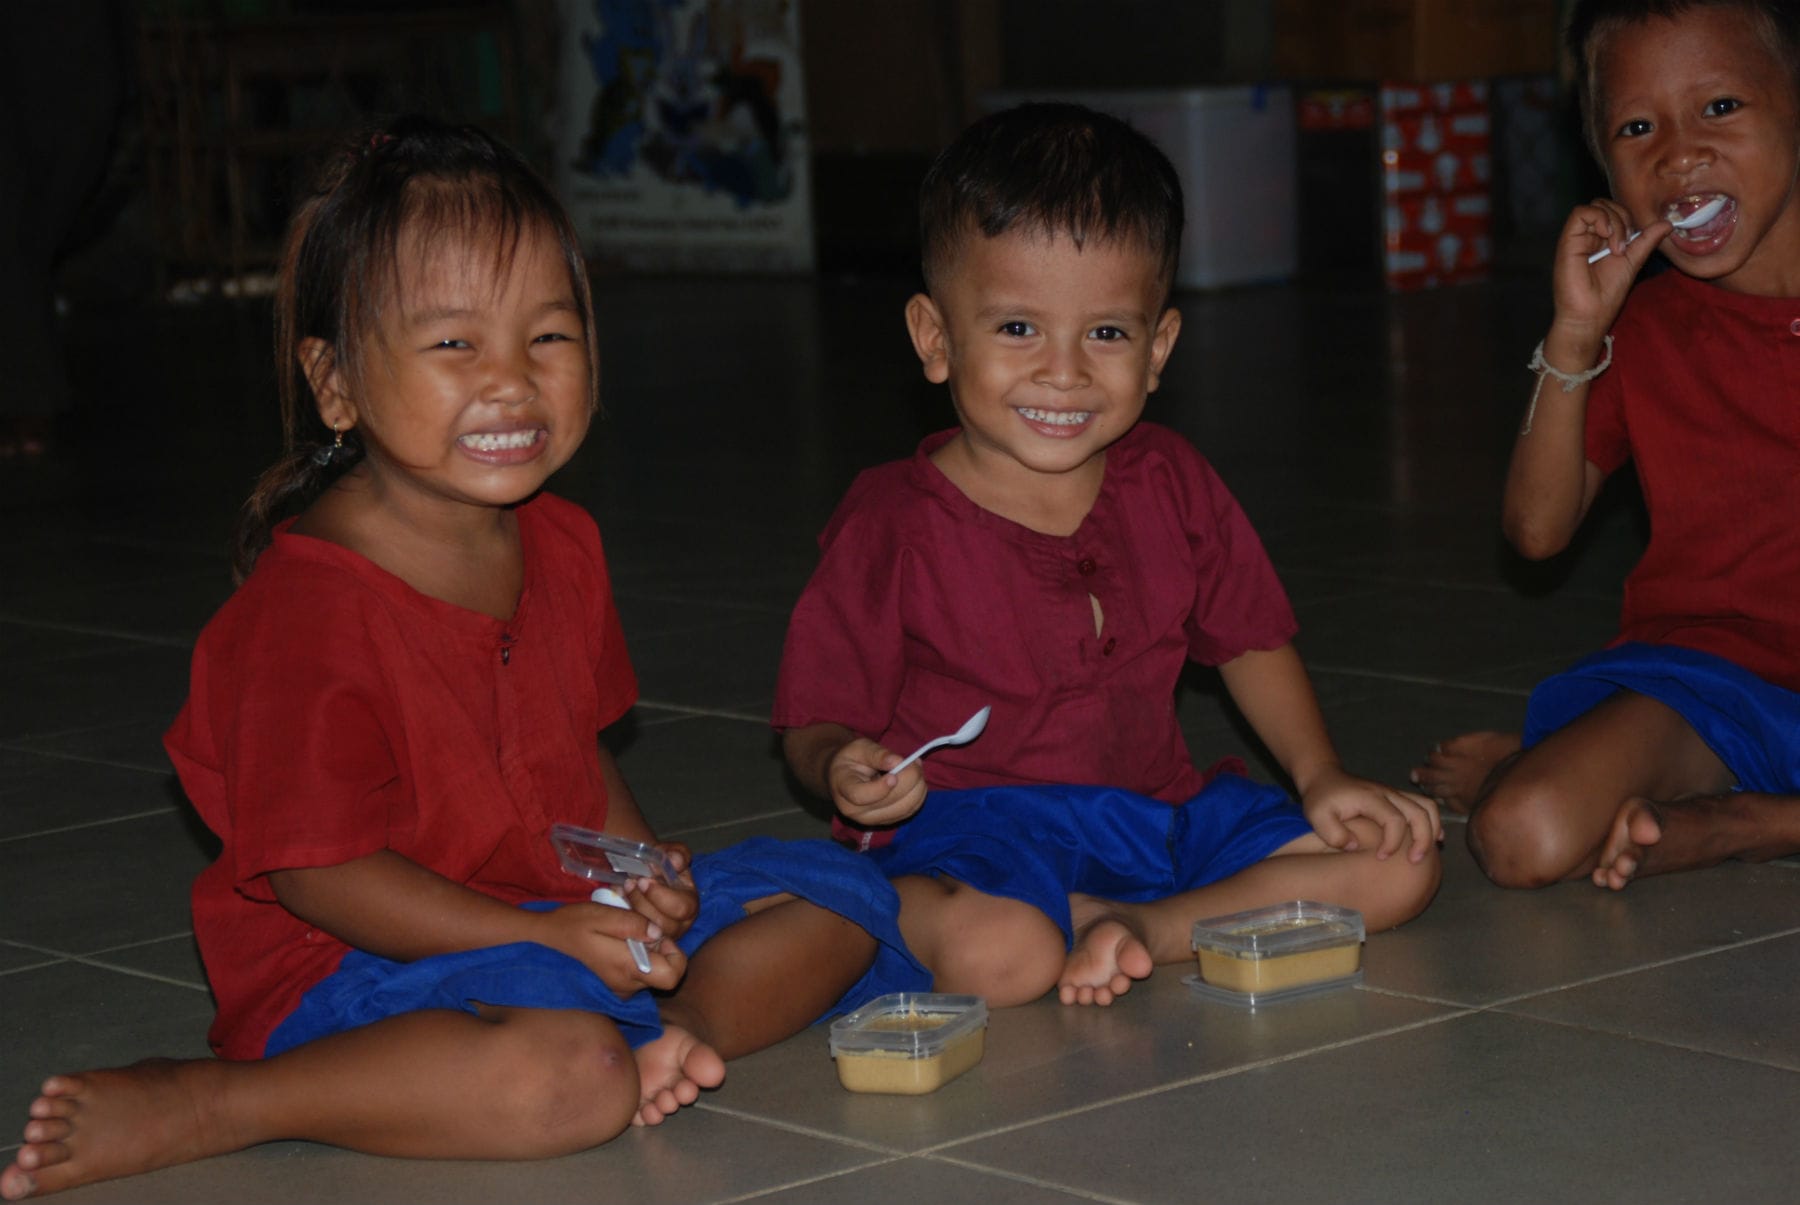 カンボジア 子どもたちの栄養改善に取り組む スナック菓子風の栄養補助食品を開発